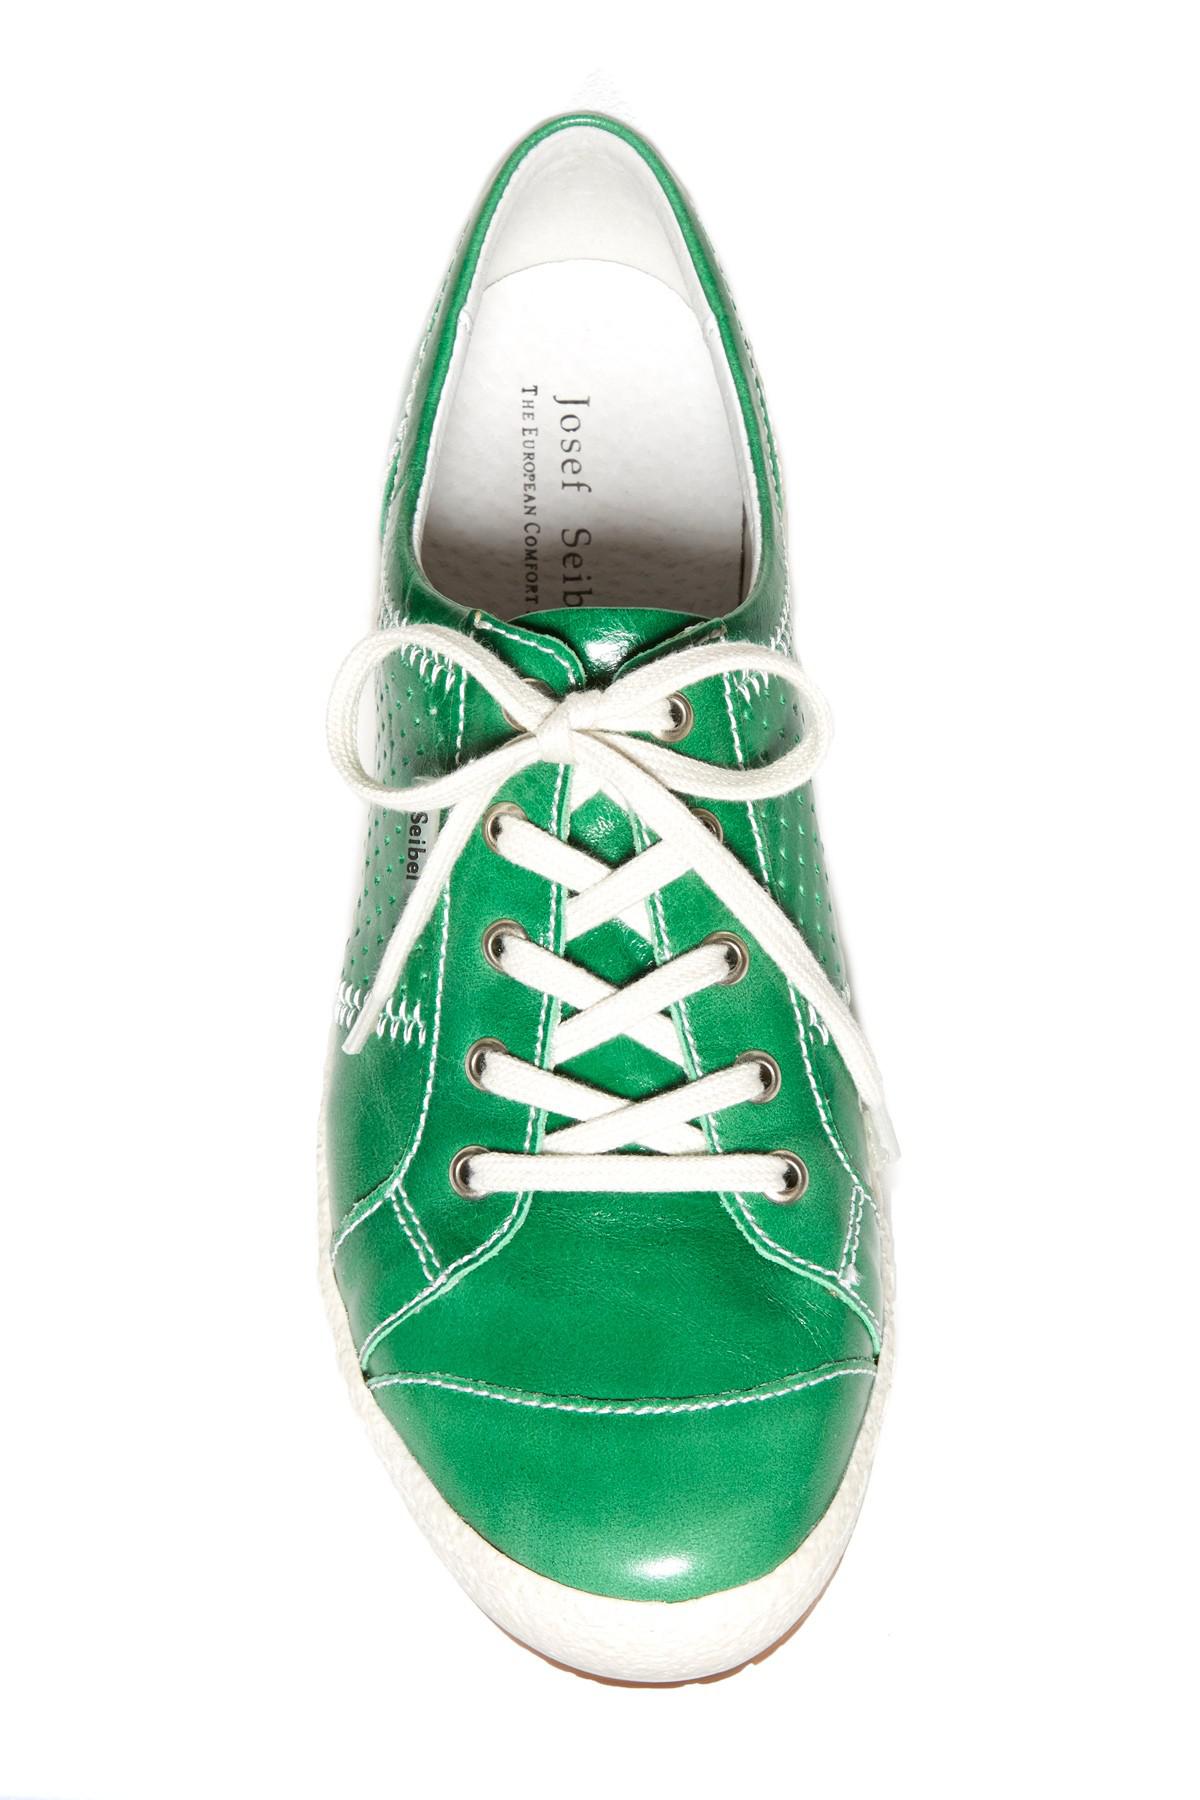 Josef Seibel Leather Caspian Sneaker in Green | Lyst